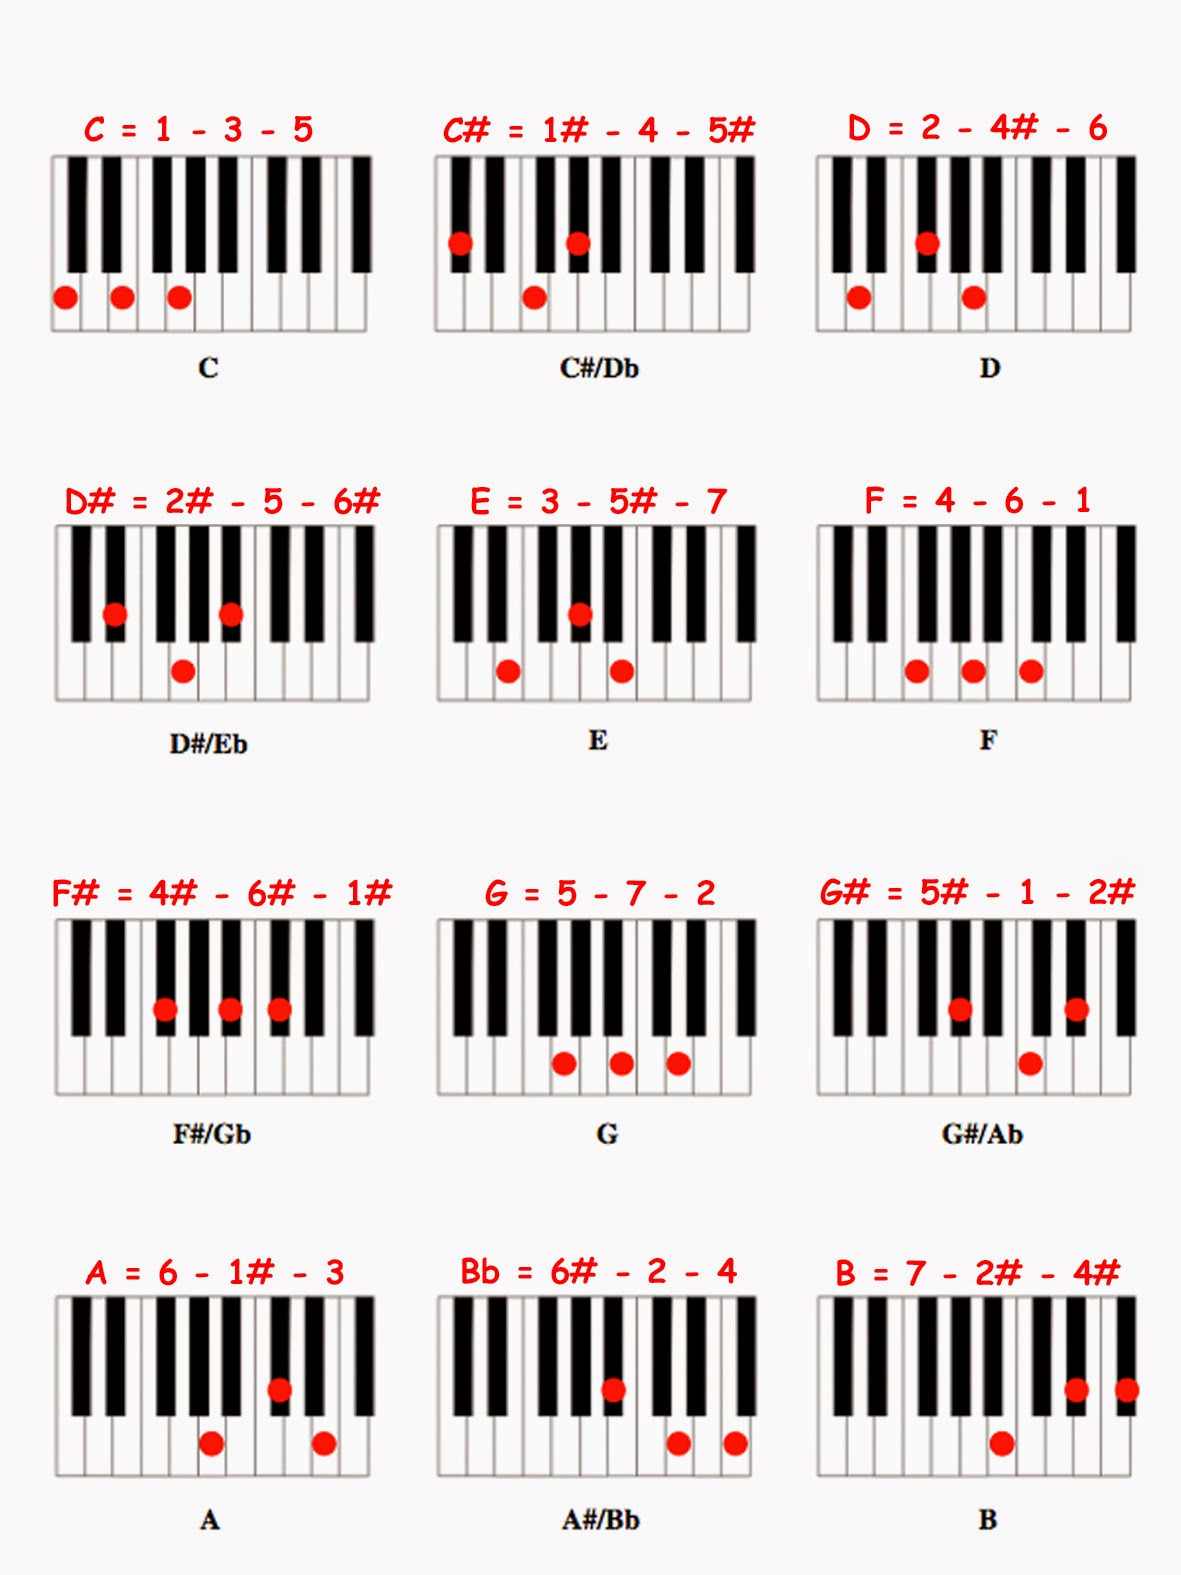  cara bermain piano otodidak